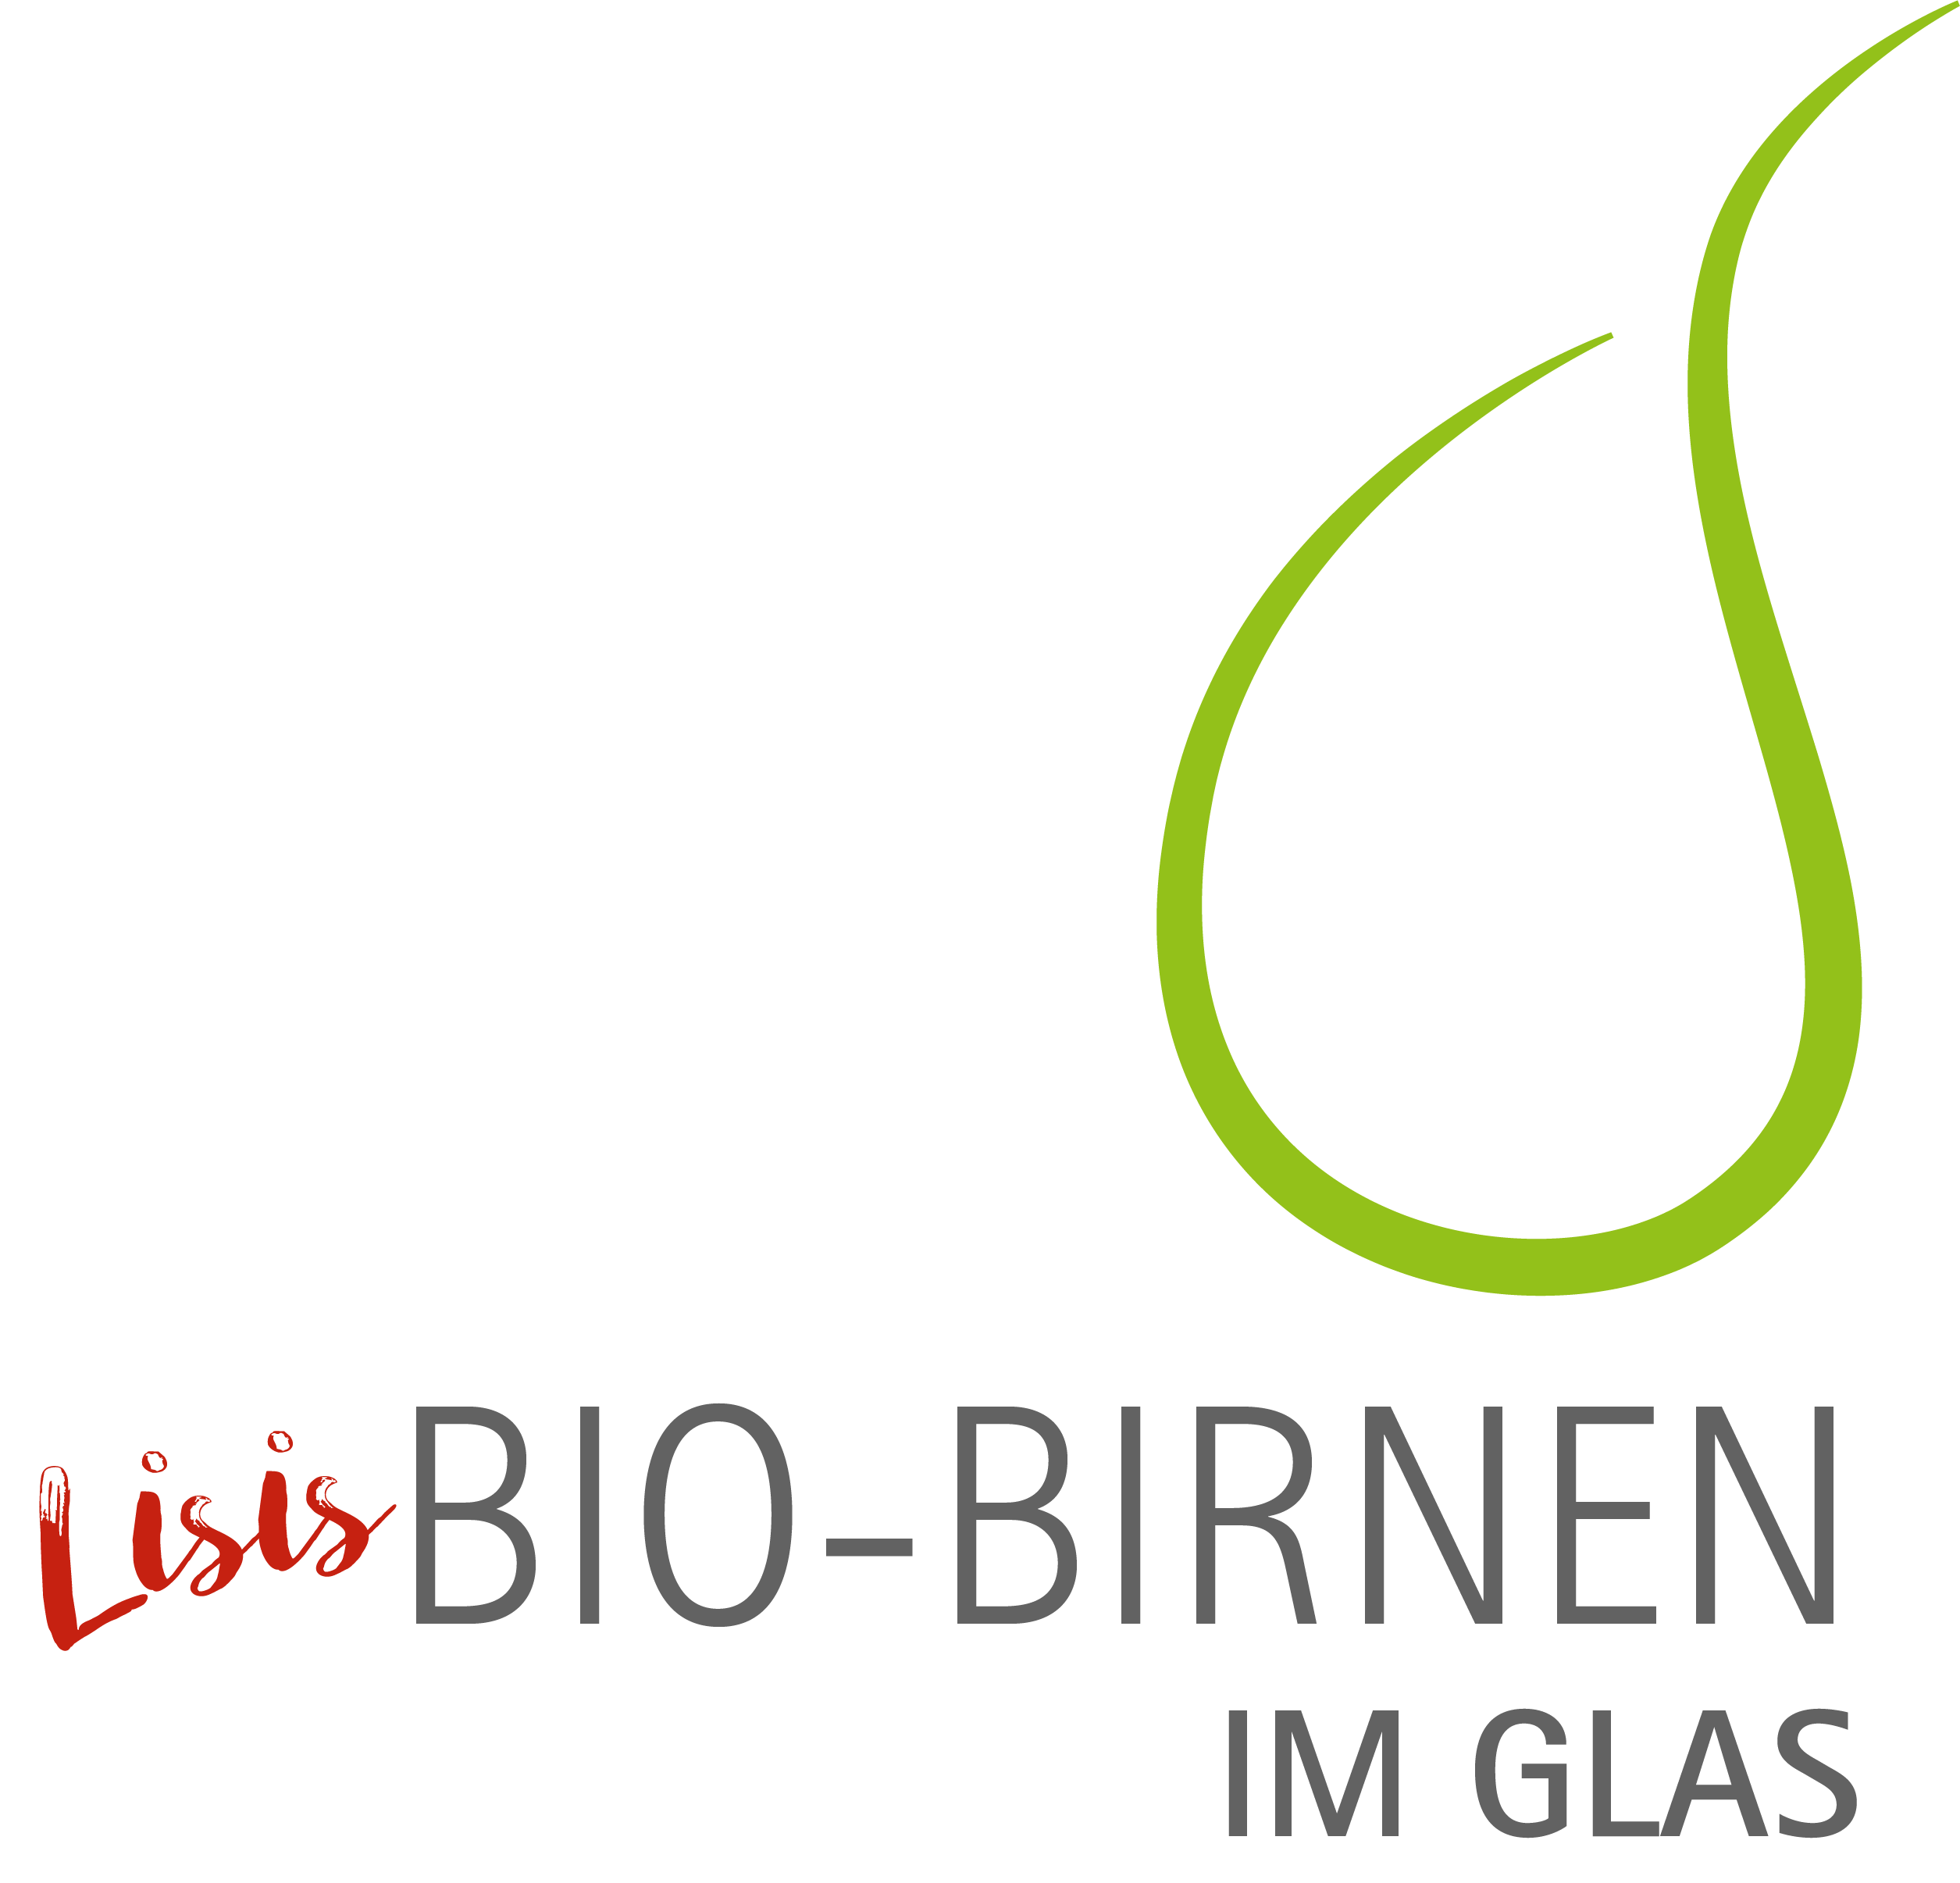 schweighofer_produktlogos-birne-glas_201218